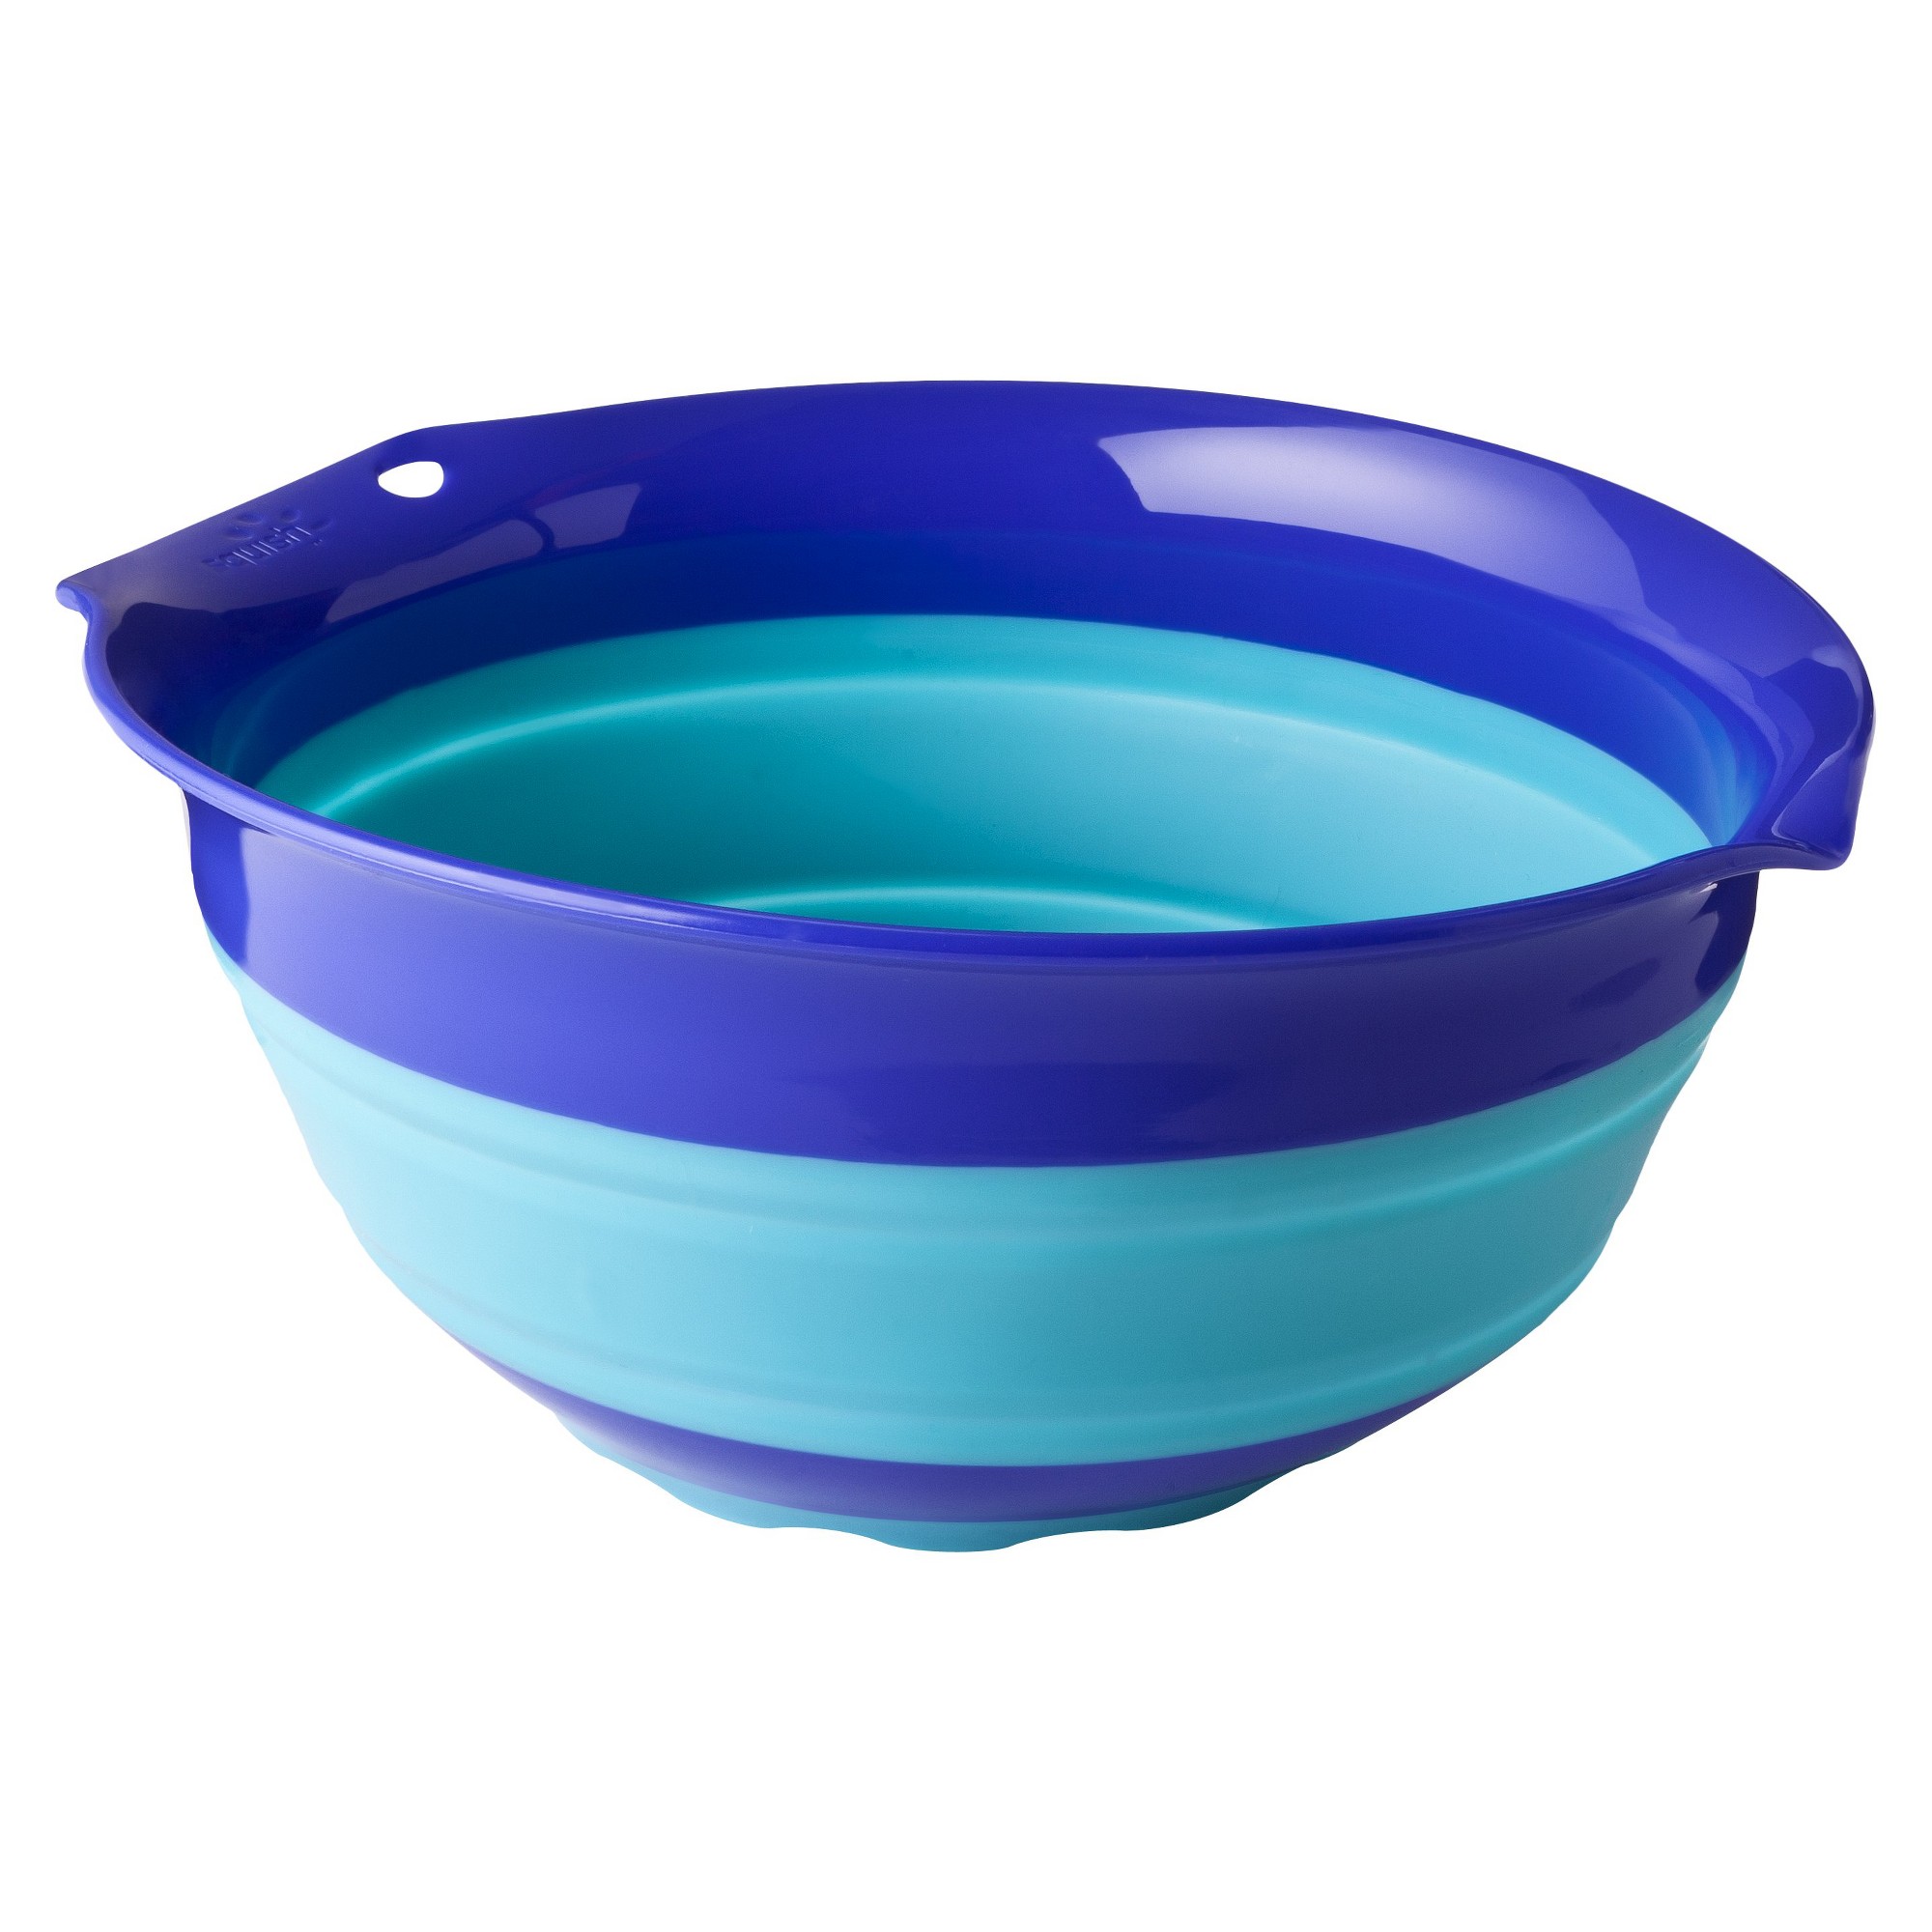 Squish 3 Quart Collapsible Bowl, Blue